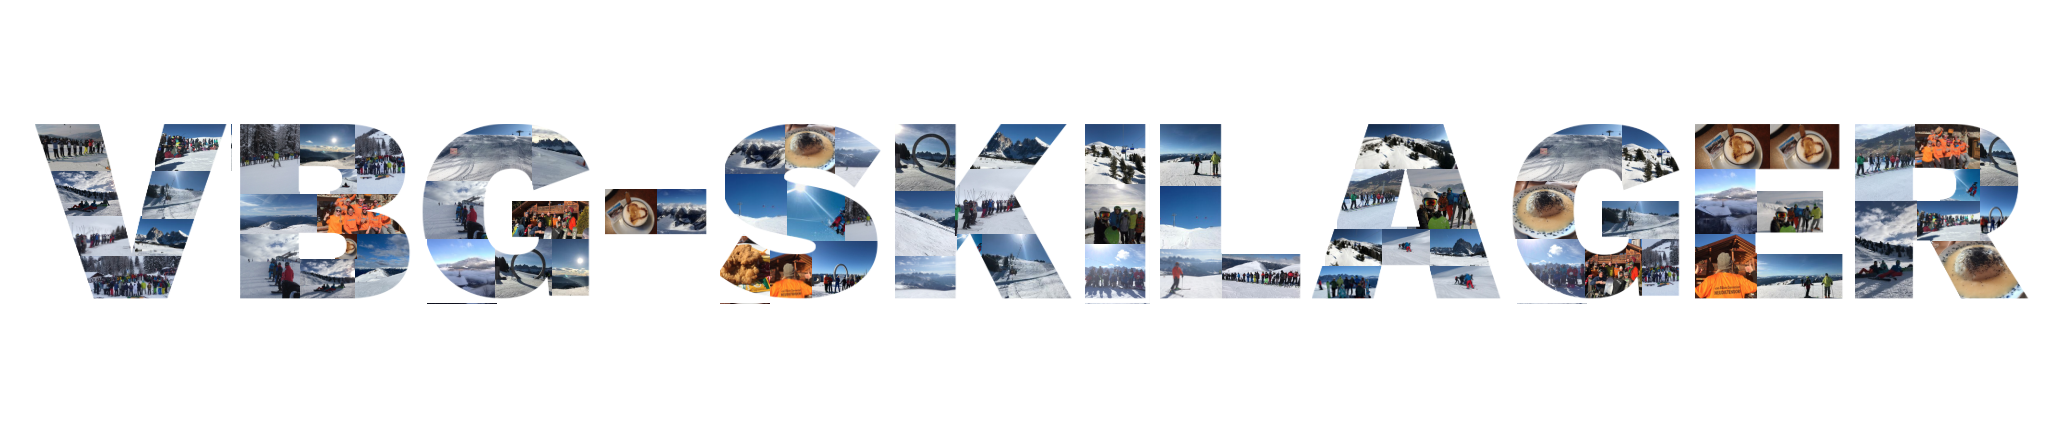 Rückblick: 15 Jahre Skilager am vBG